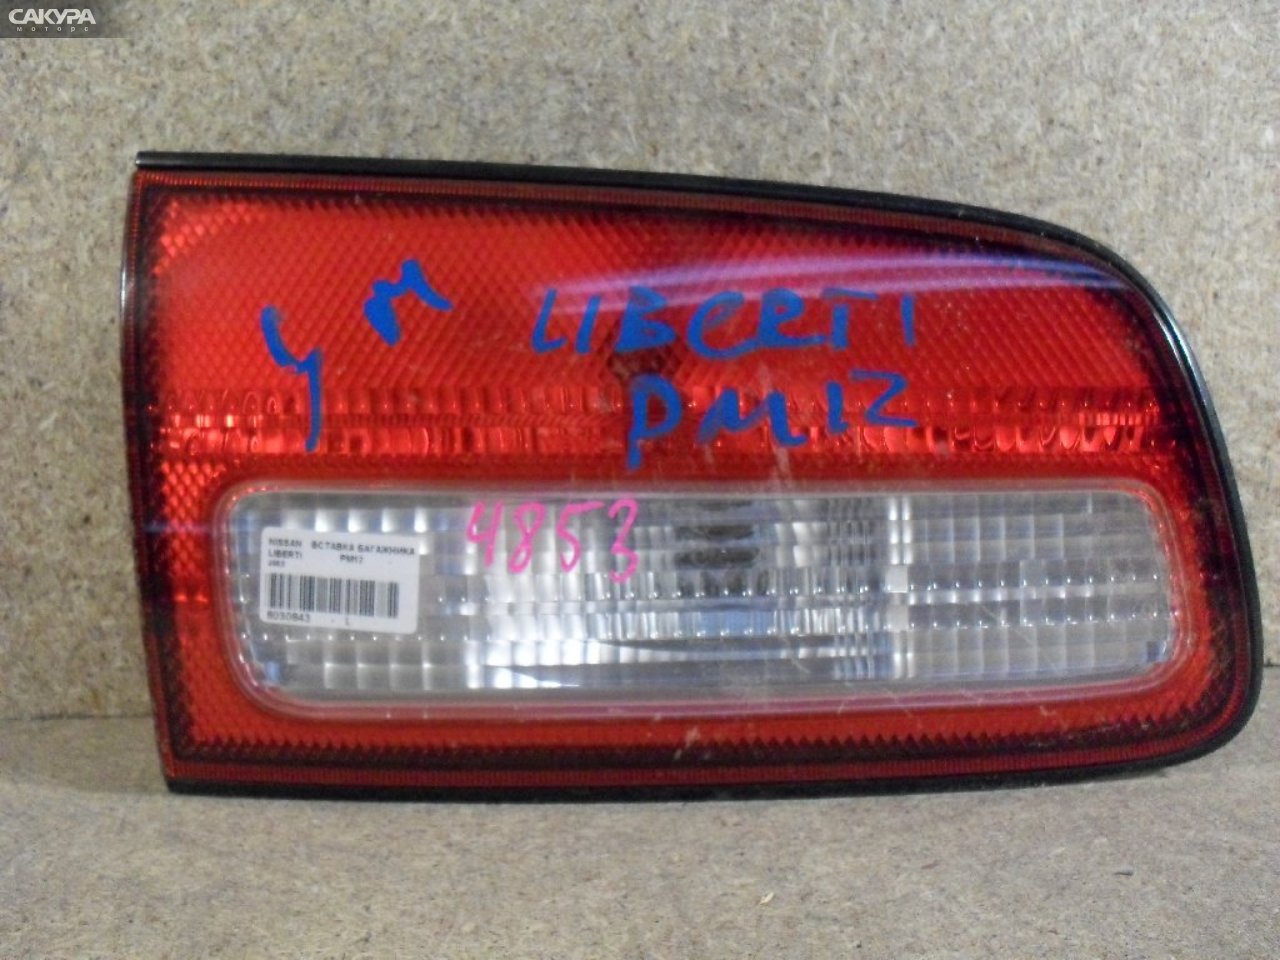 Фонарь вставка багажника левый Nissan Liberty PM12 4853: купить в Сакура Абакан.